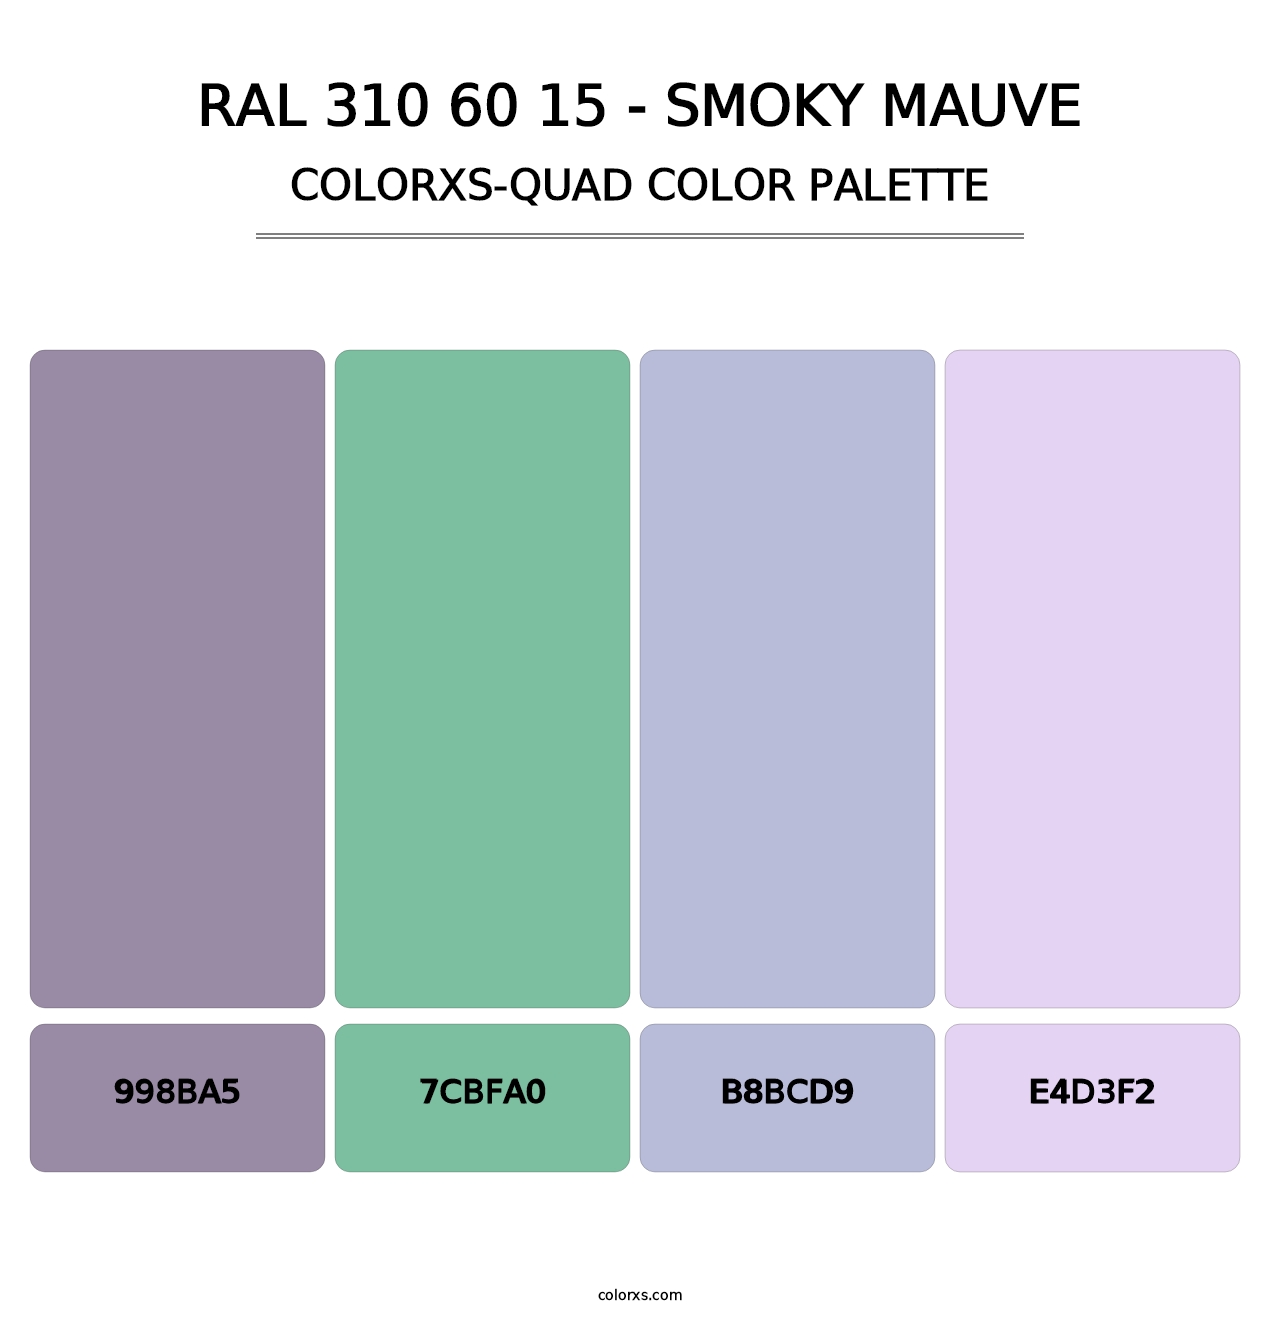 RAL 310 60 15 - Smoky Mauve - Colorxs Quad Palette